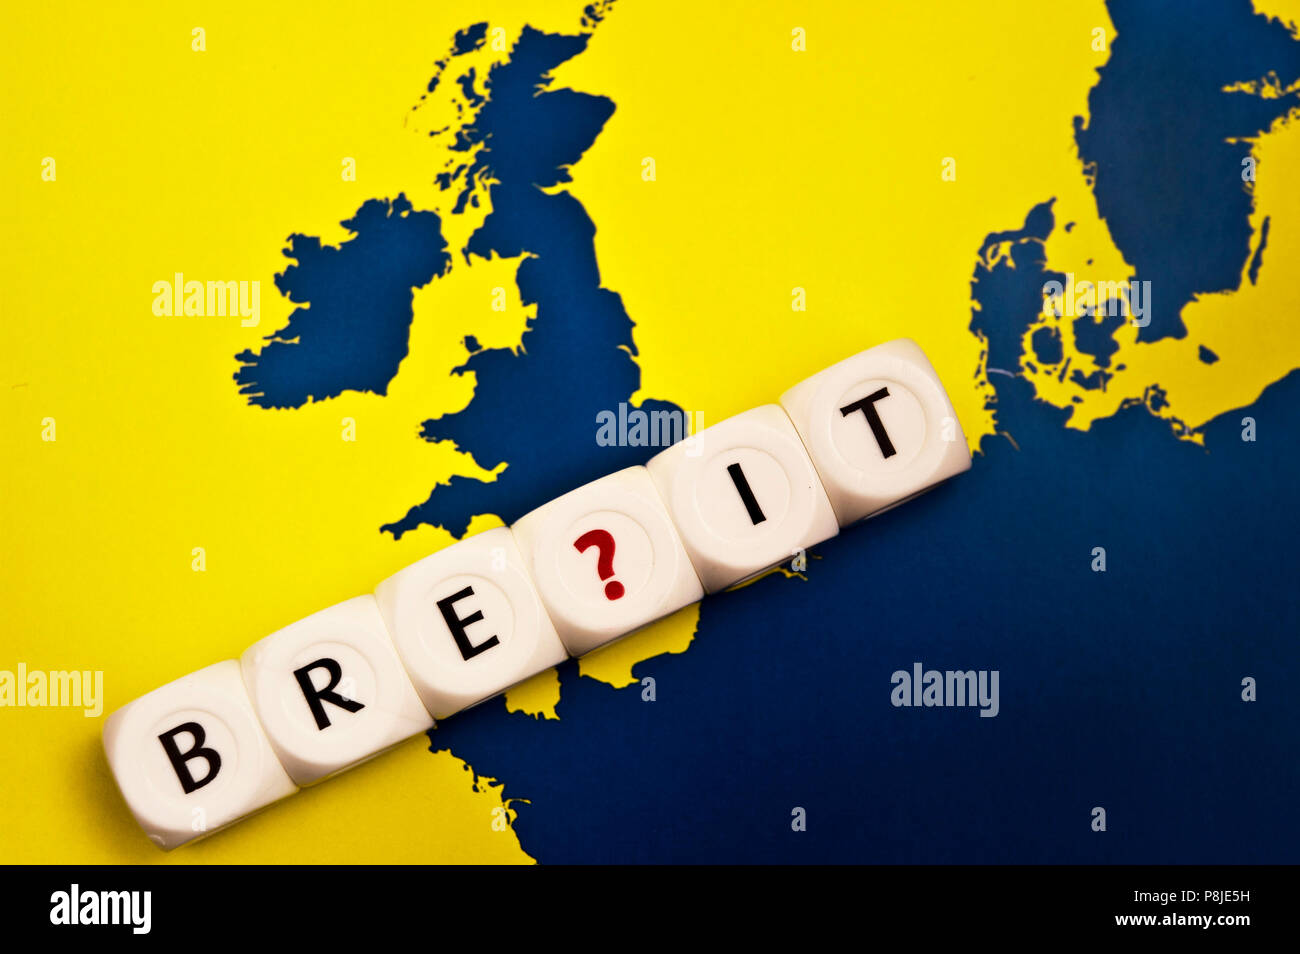 Image conceptuelle pour la culture des doutes sur l'Europe Union européenne Royaume-uni laissant ou Brexit Banque D'Images